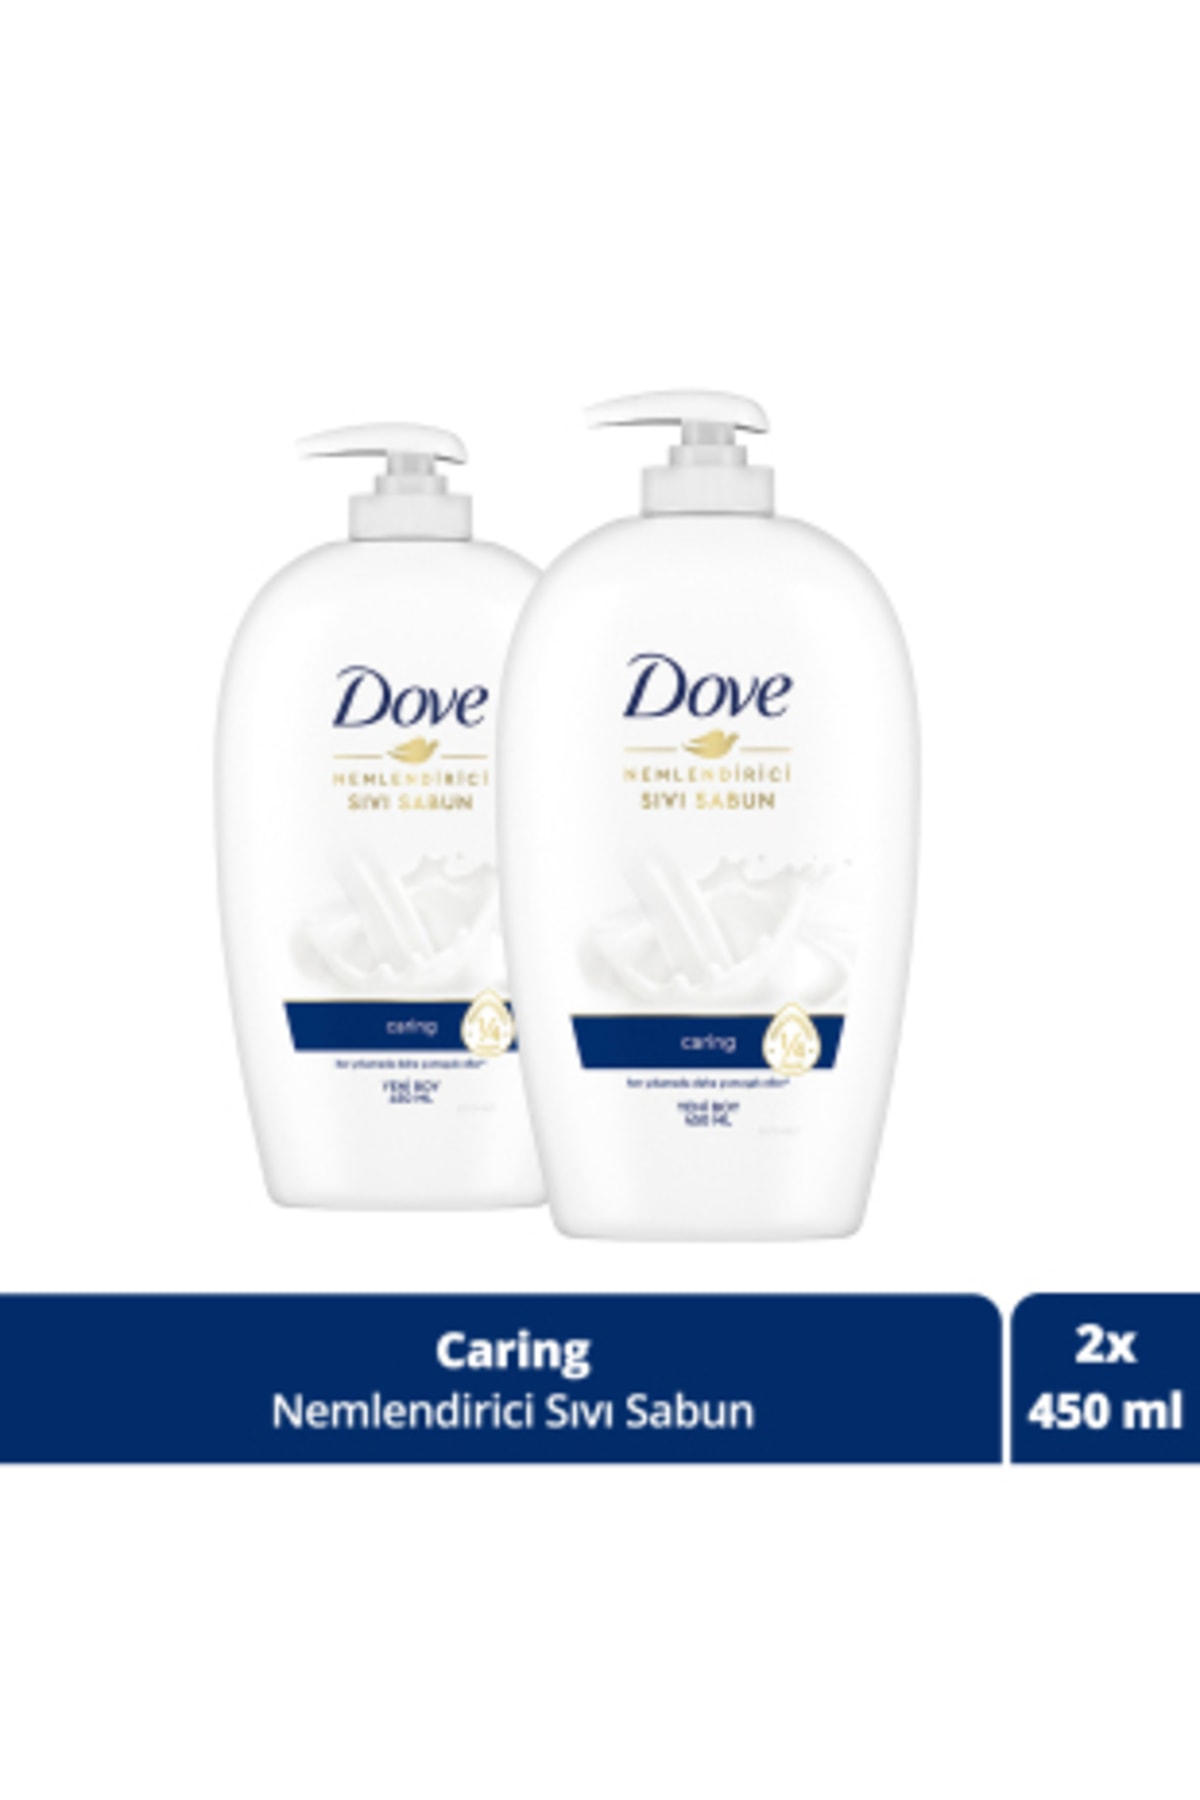 Dove Nemlendirici Sıvı Sabun Caring 1/4 Nemlendirici Krem Etkili 450 ml x2 Adet